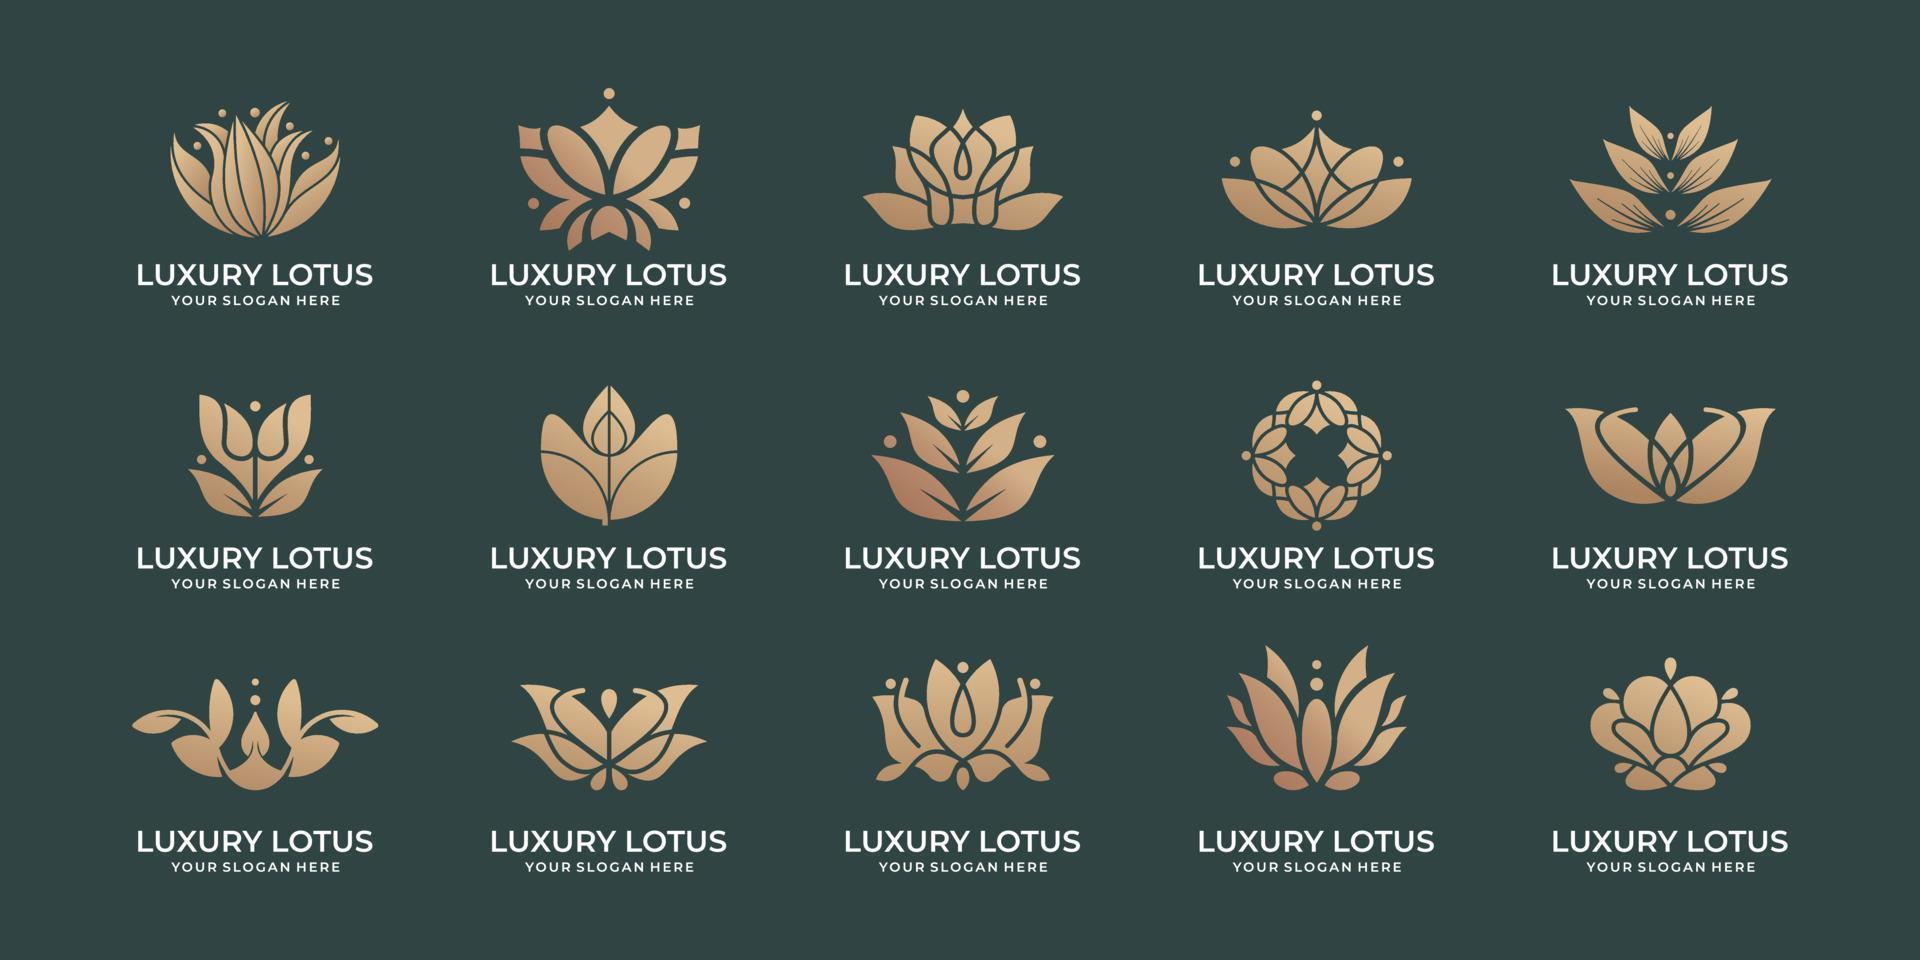 inspiración de paquete de diseño de logotipo de loto de lujo. flor de loto, logotipo de adorno floral, conjunto de iconos, logotipo de loto. vector